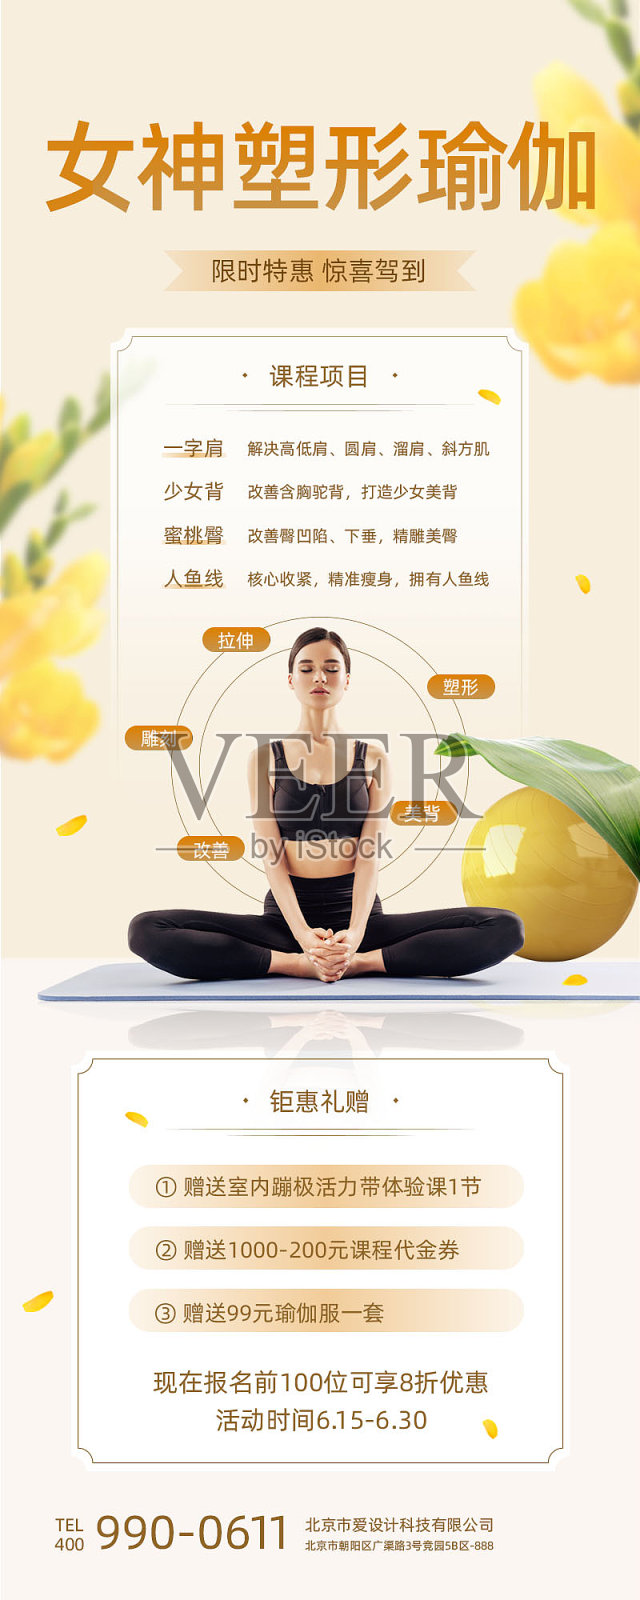 清新瑜伽促销长图海报设计模板素材